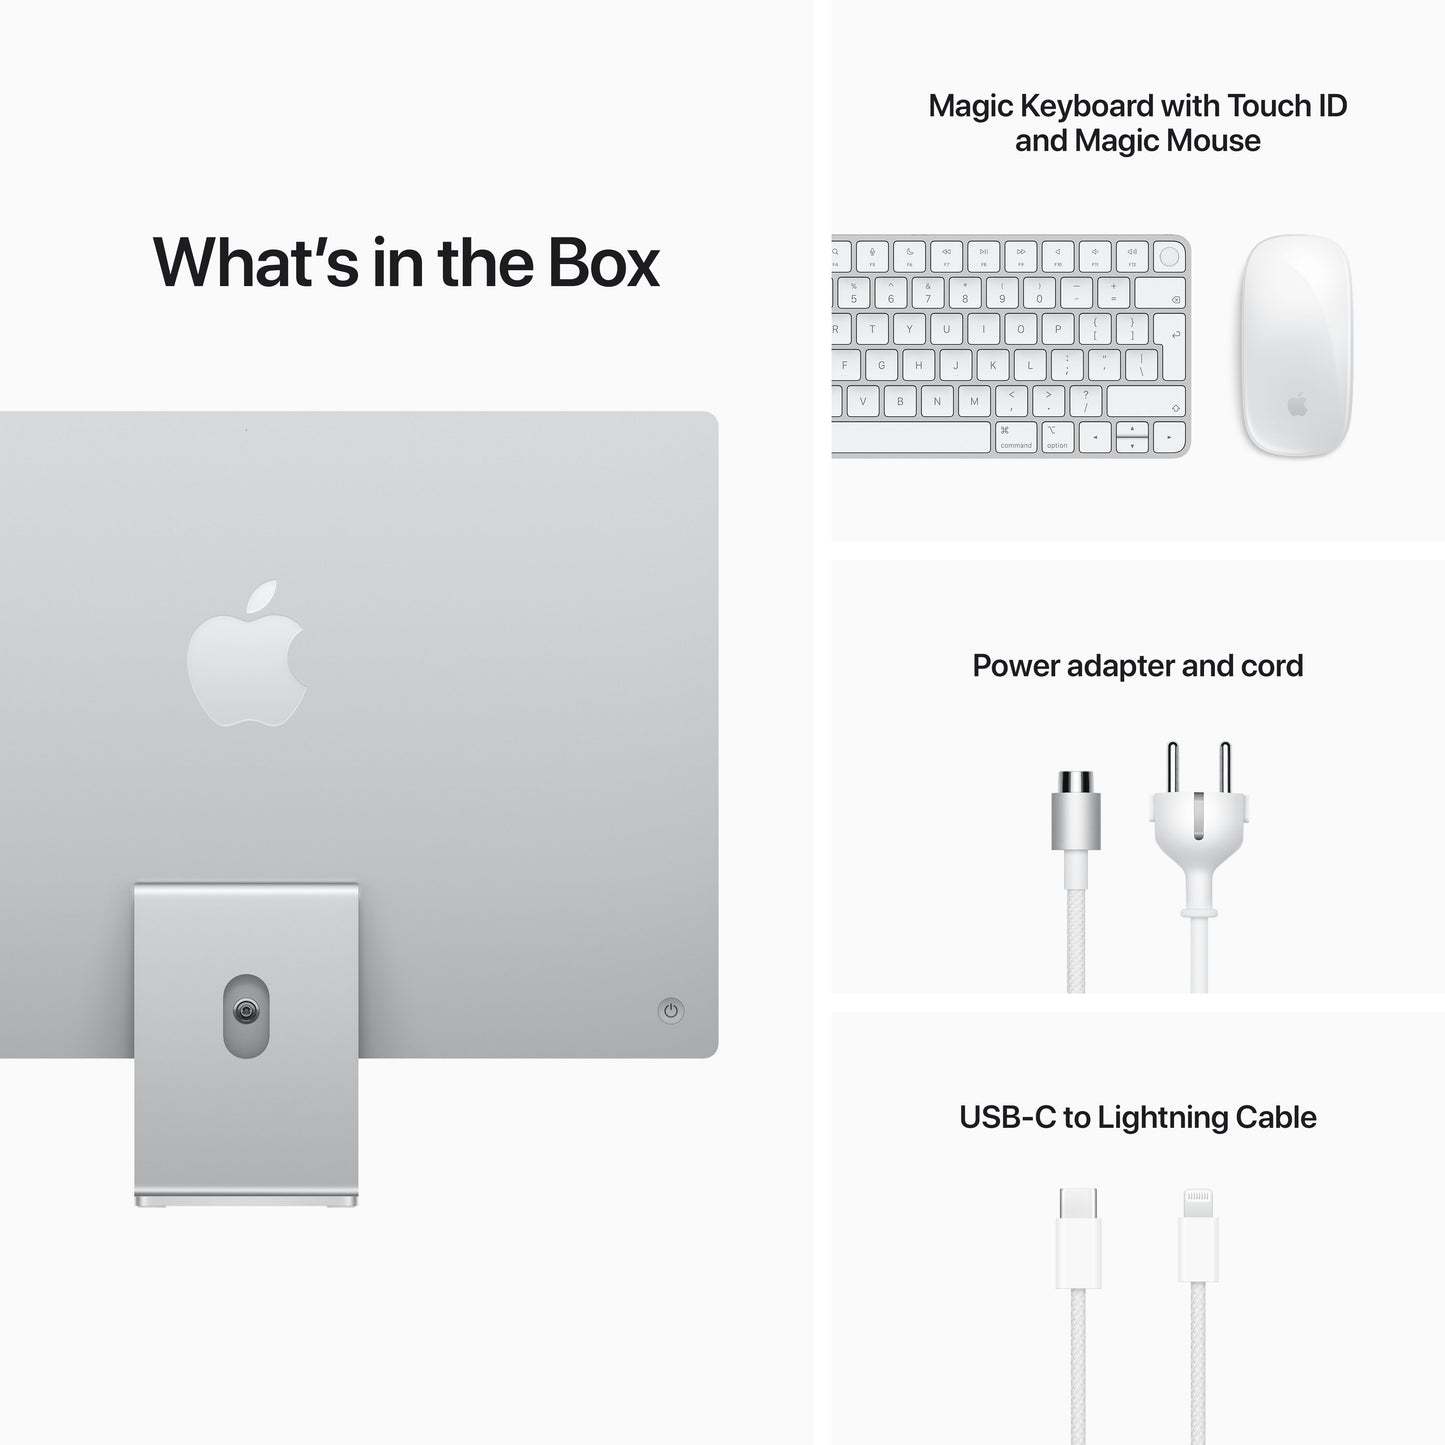 EOL iMac 24 pouces avec écran Retina 4,5K : Puce Apple M1 avec CPU 8 cœurs et GPU 8 cœurs, 8 Go, 512 Go - Argent (Azerty FR)